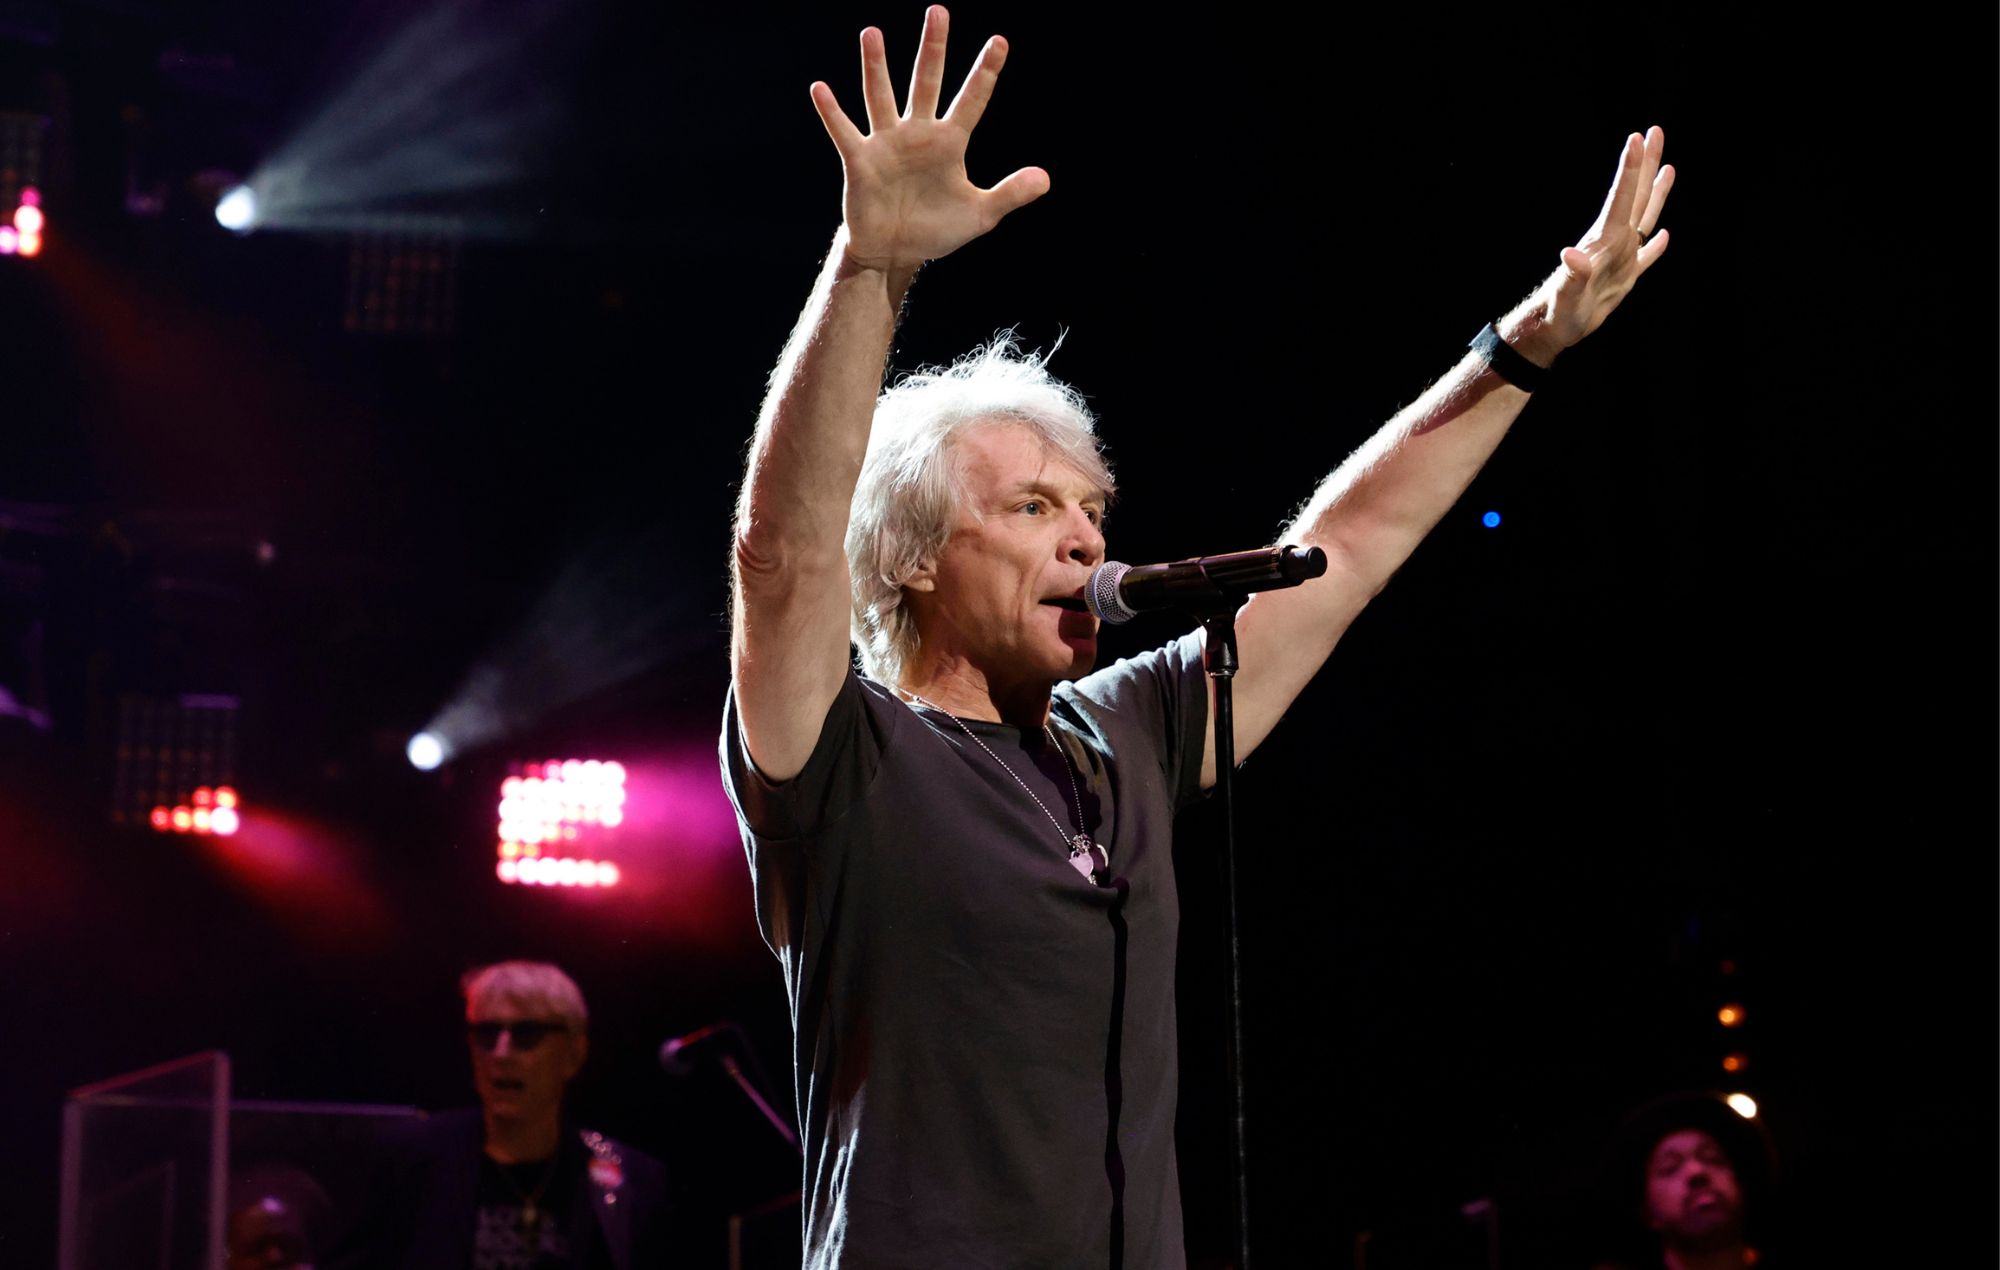 Jon Bon Jovi podría no volver a cantar en directo: "Si no puedo ser el tipo que una vez fui, entonces estoy acabado"